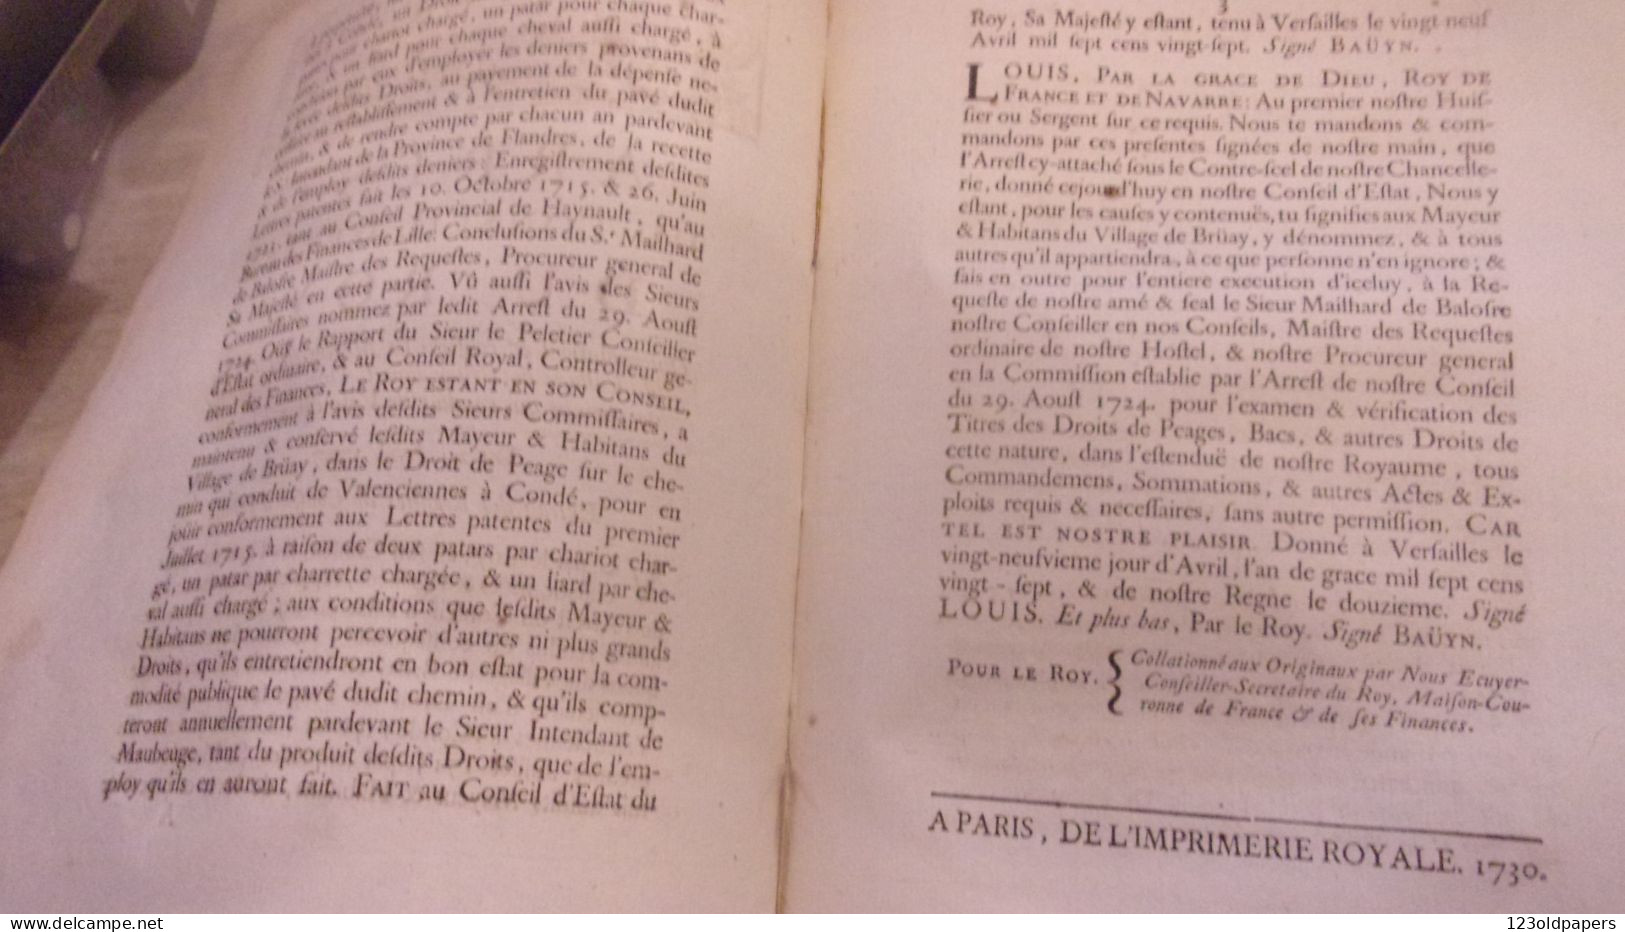 1730  Bruay-en-Artois  ARREST CONSEIL ETAT DU ROY DROIT DE PEAGE SUR CHEMIN QUI CONDUIT DE VALENCIENNES A CONDE - Documents Historiques